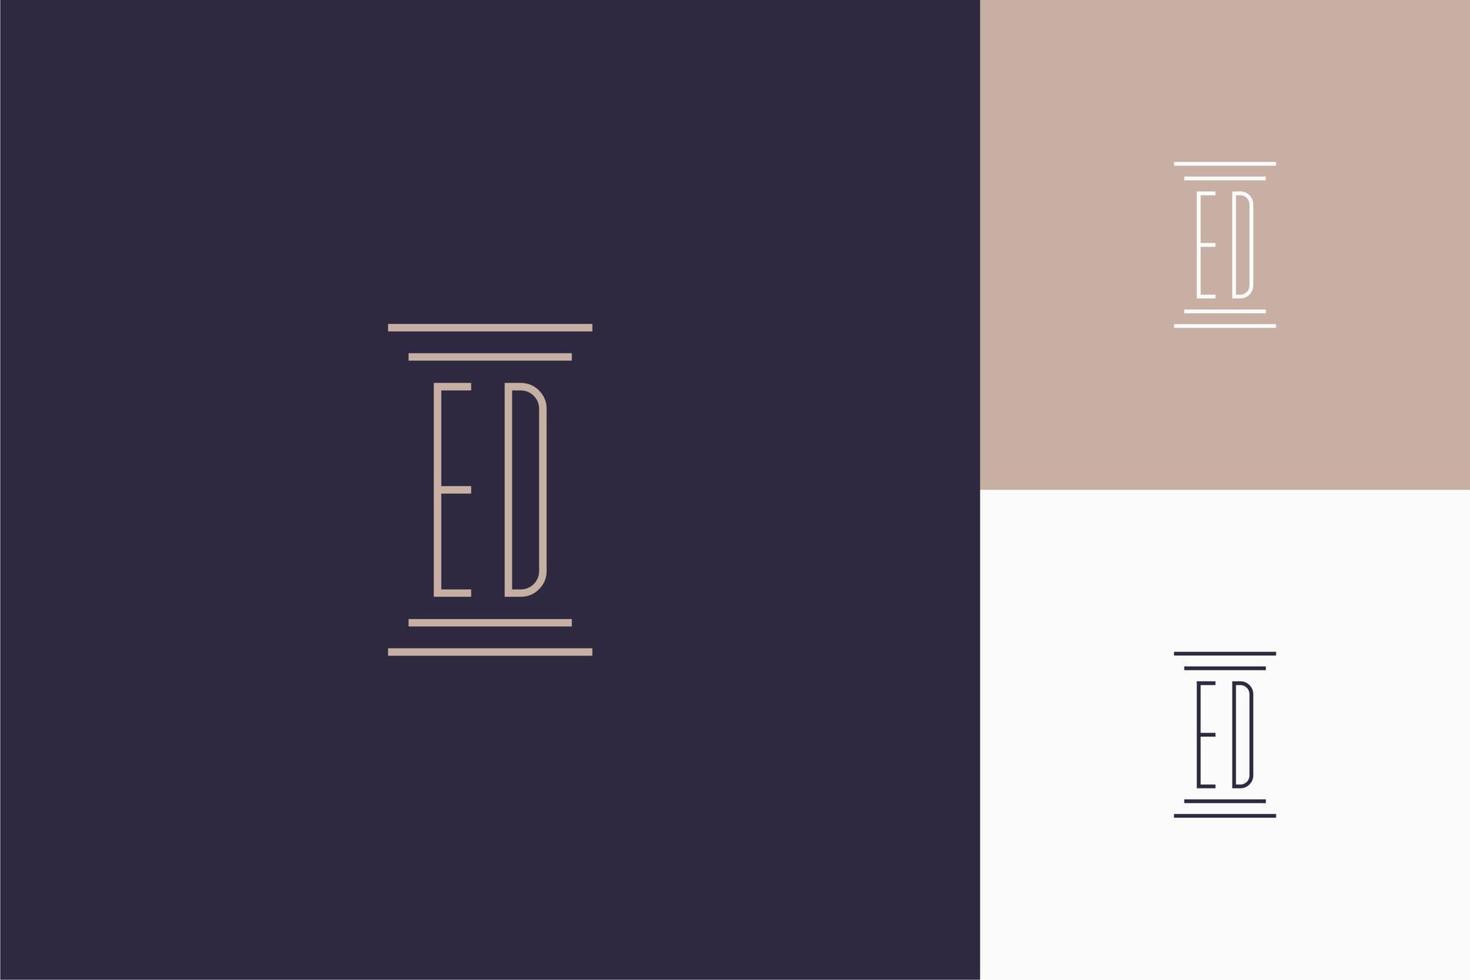 conception des initiales du monogramme ed pour le logo du cabinet d'avocats vecteur